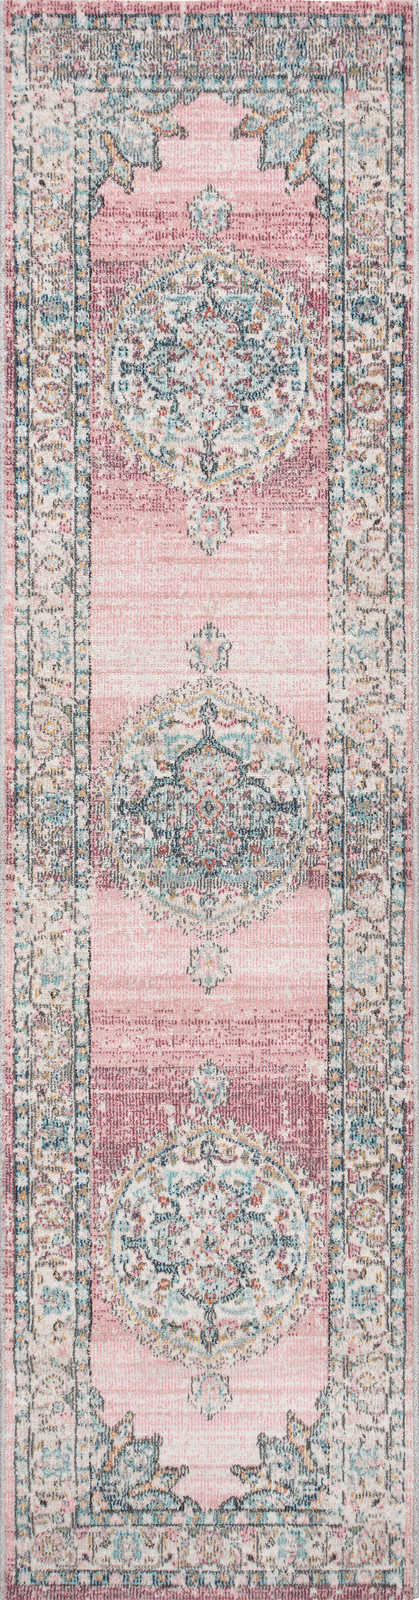             Tapis en lin tissé avec des accents roses comme tapis de passage - 300 x 80 cm
        